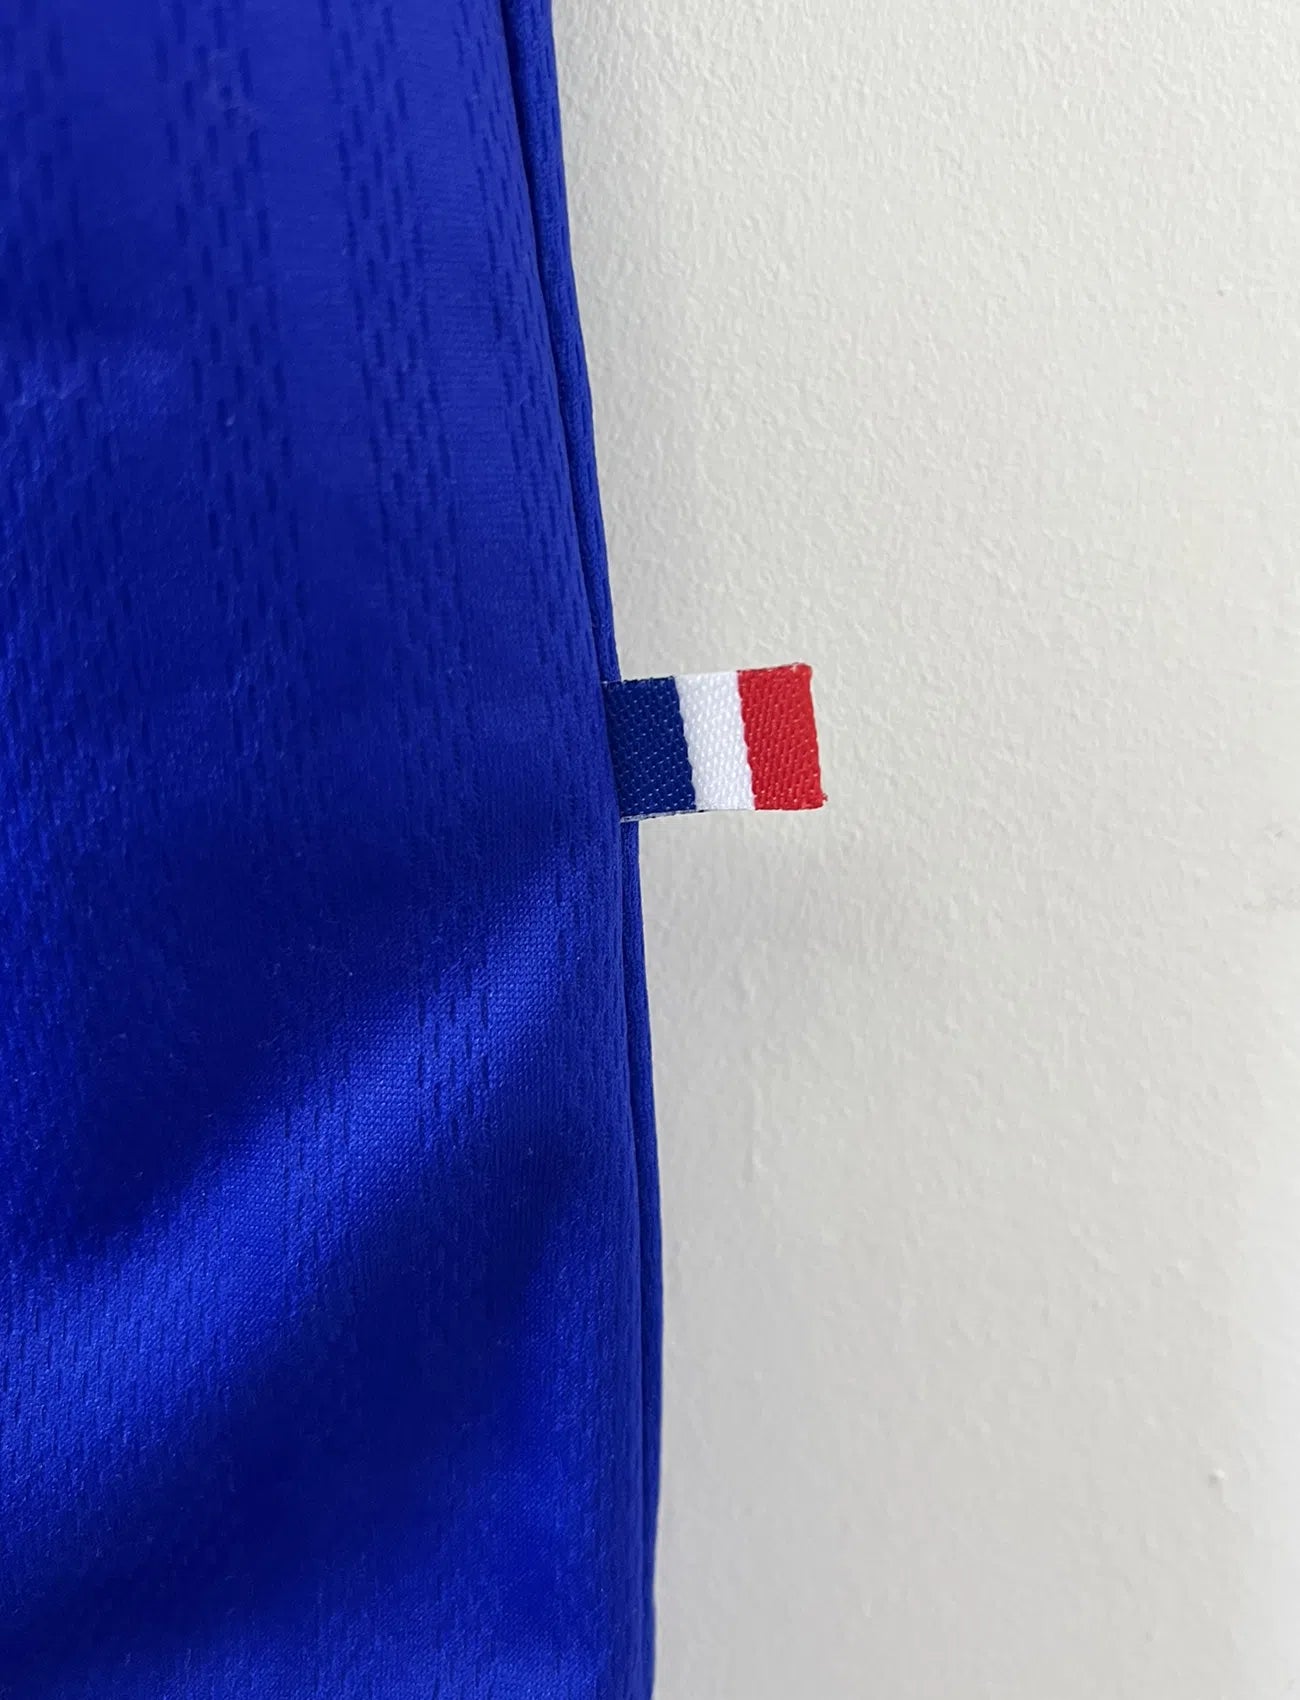 Maillot de foot vintage bleu blanc et rouge domicile de l'équipe de France 1998. On peut retrouver le sponsor adidas. On peut voir le coq avec l'étoile avec la signature "pour toi" de Zinedine Zidane. Il s'agit d'un maillot authentique.